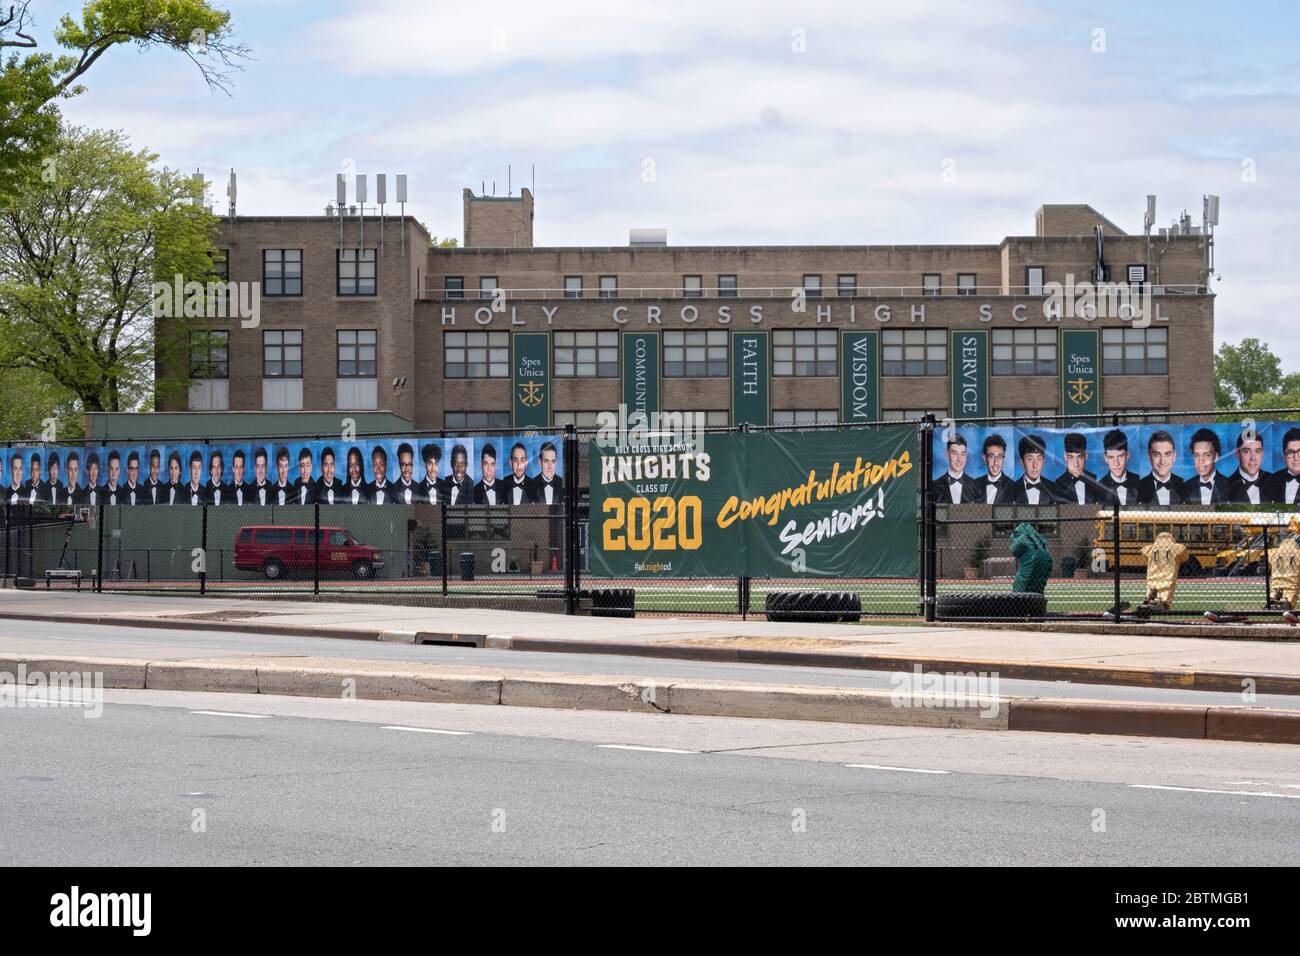 Al posto di una cerimonia di laurea, la Scuola superiore della Santa Croce appese un banner e foto degli anziani laureati. A Flushing, Queens, New York. Foto Stock